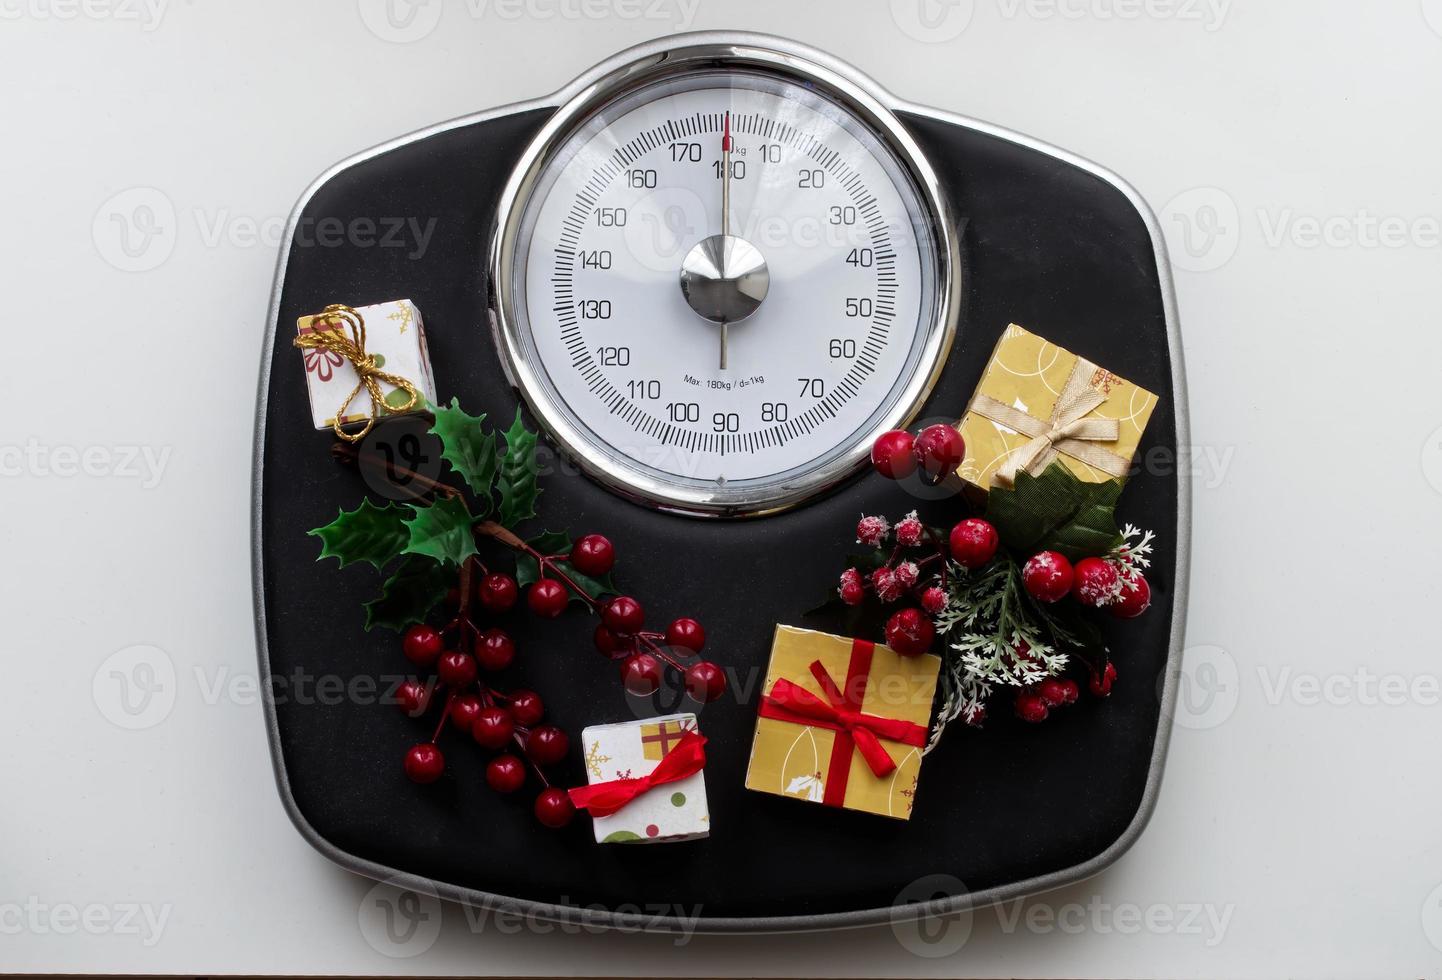 analoge schaal omringd door kerstversieringen en geschenken. overgewicht na kerstvakantie. begin dieetconcept. foto